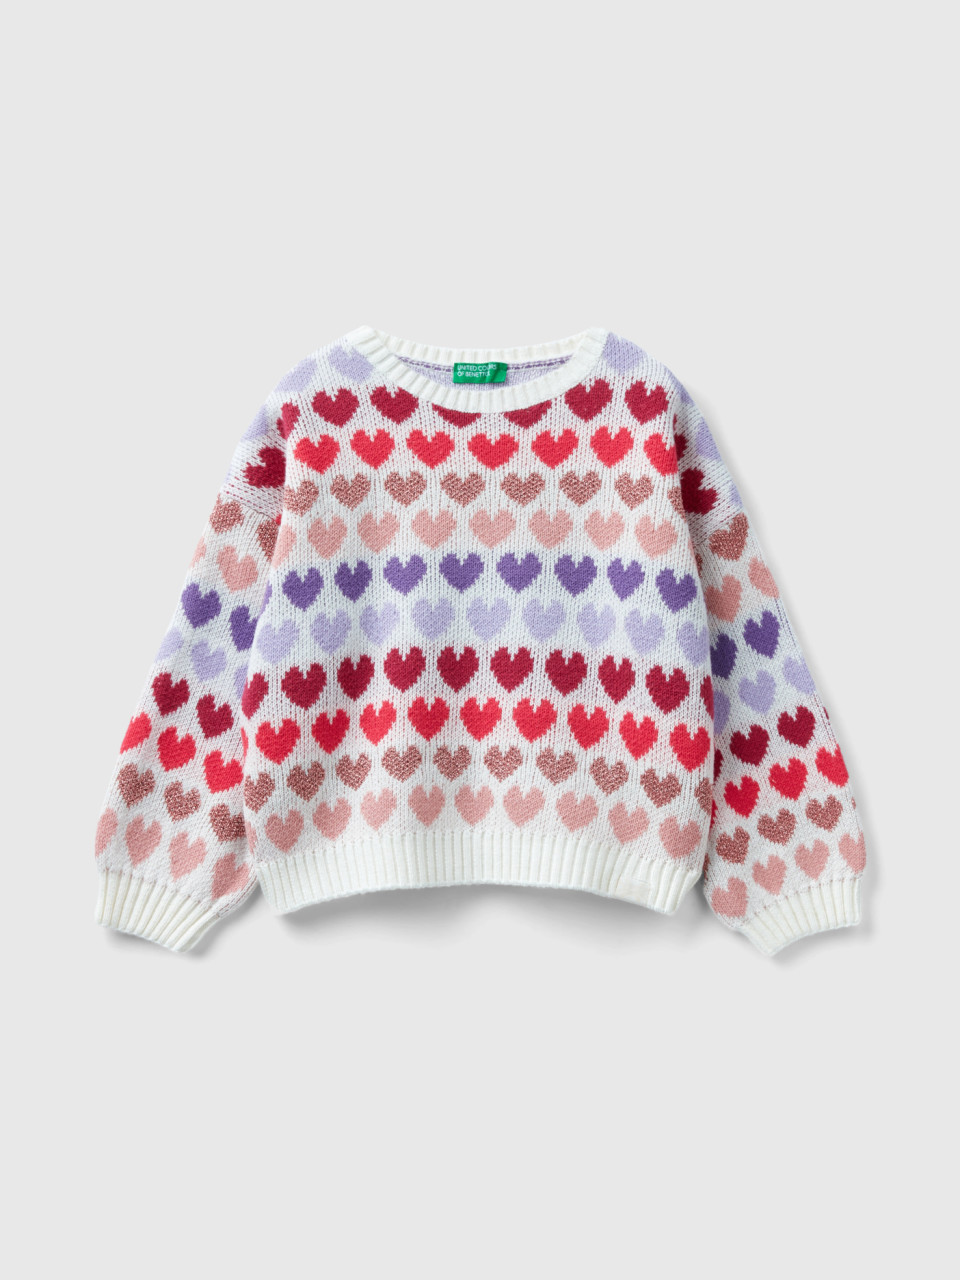 Benetton, Warm Sweater With Lurex Hearts, White, Kids